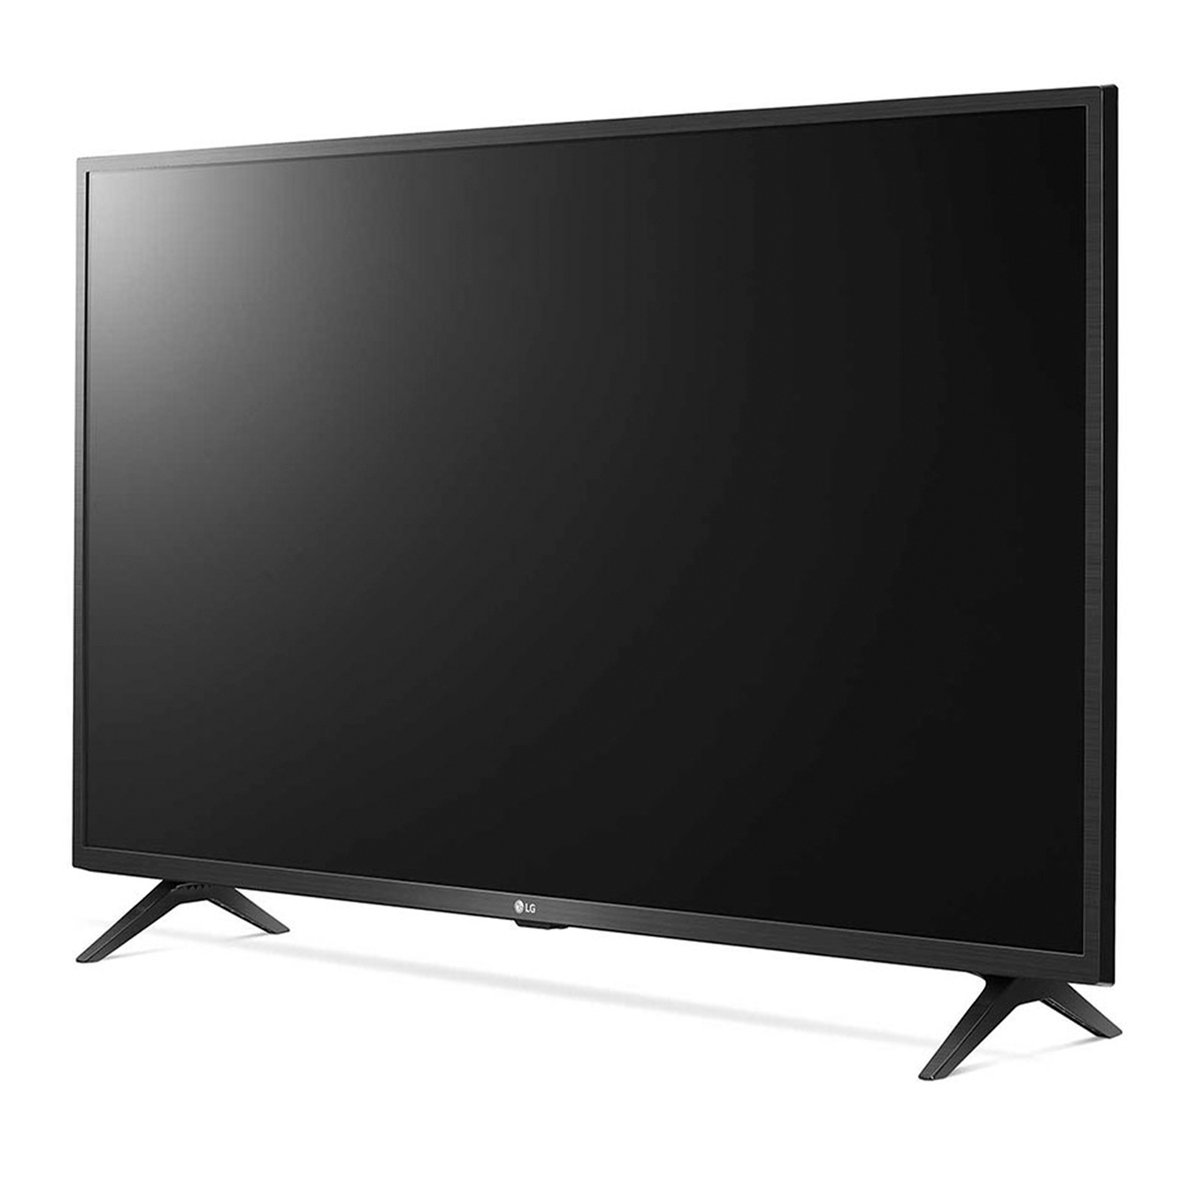 TV LG UHD 4K 43” - UN73